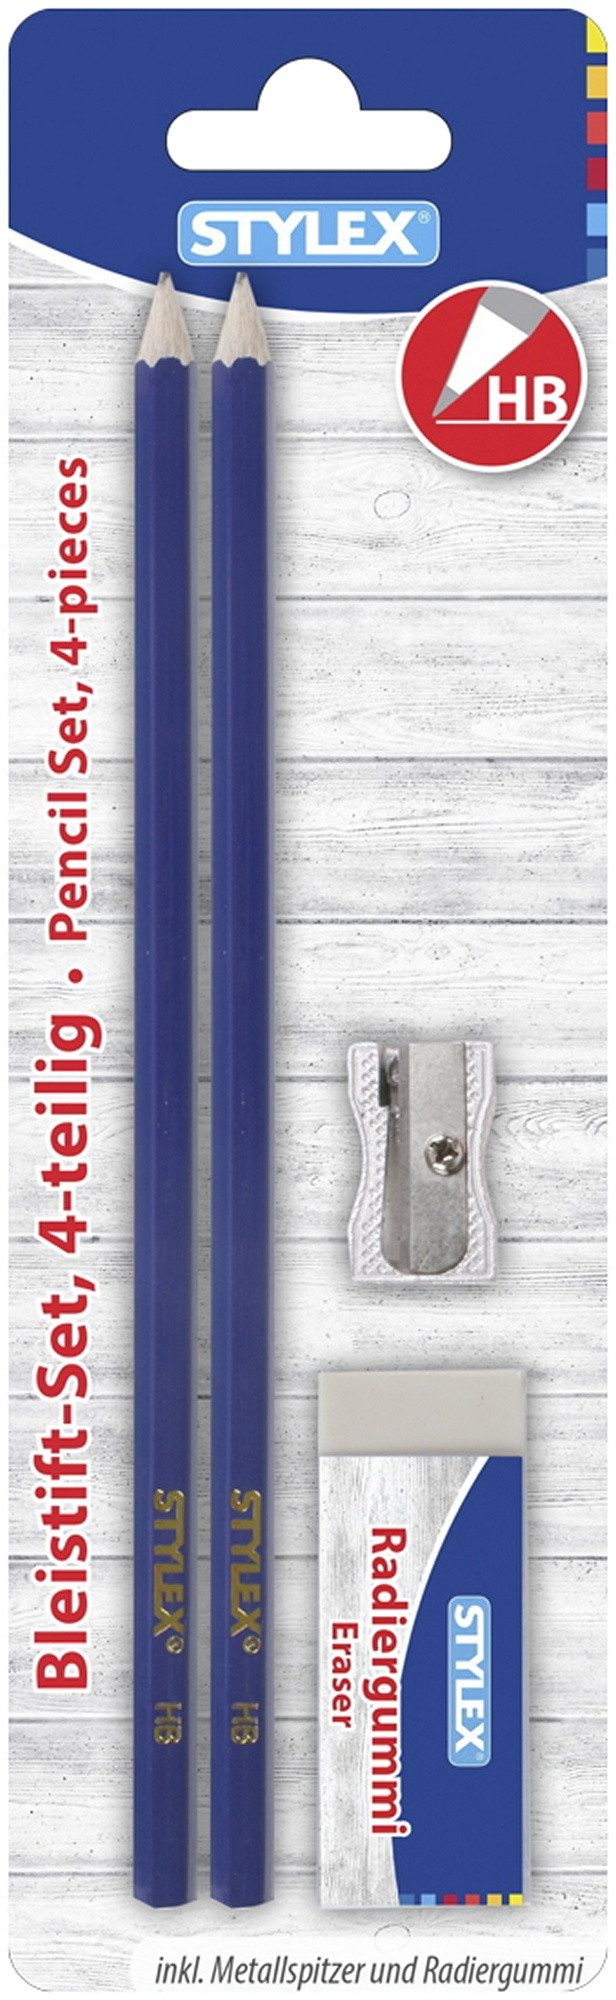 Stylex Schreibwaren Anspitzer Bleistiftset / 2 Bleistifte HB, 1 Metall-Anspitzer + Radierer / Farbe: